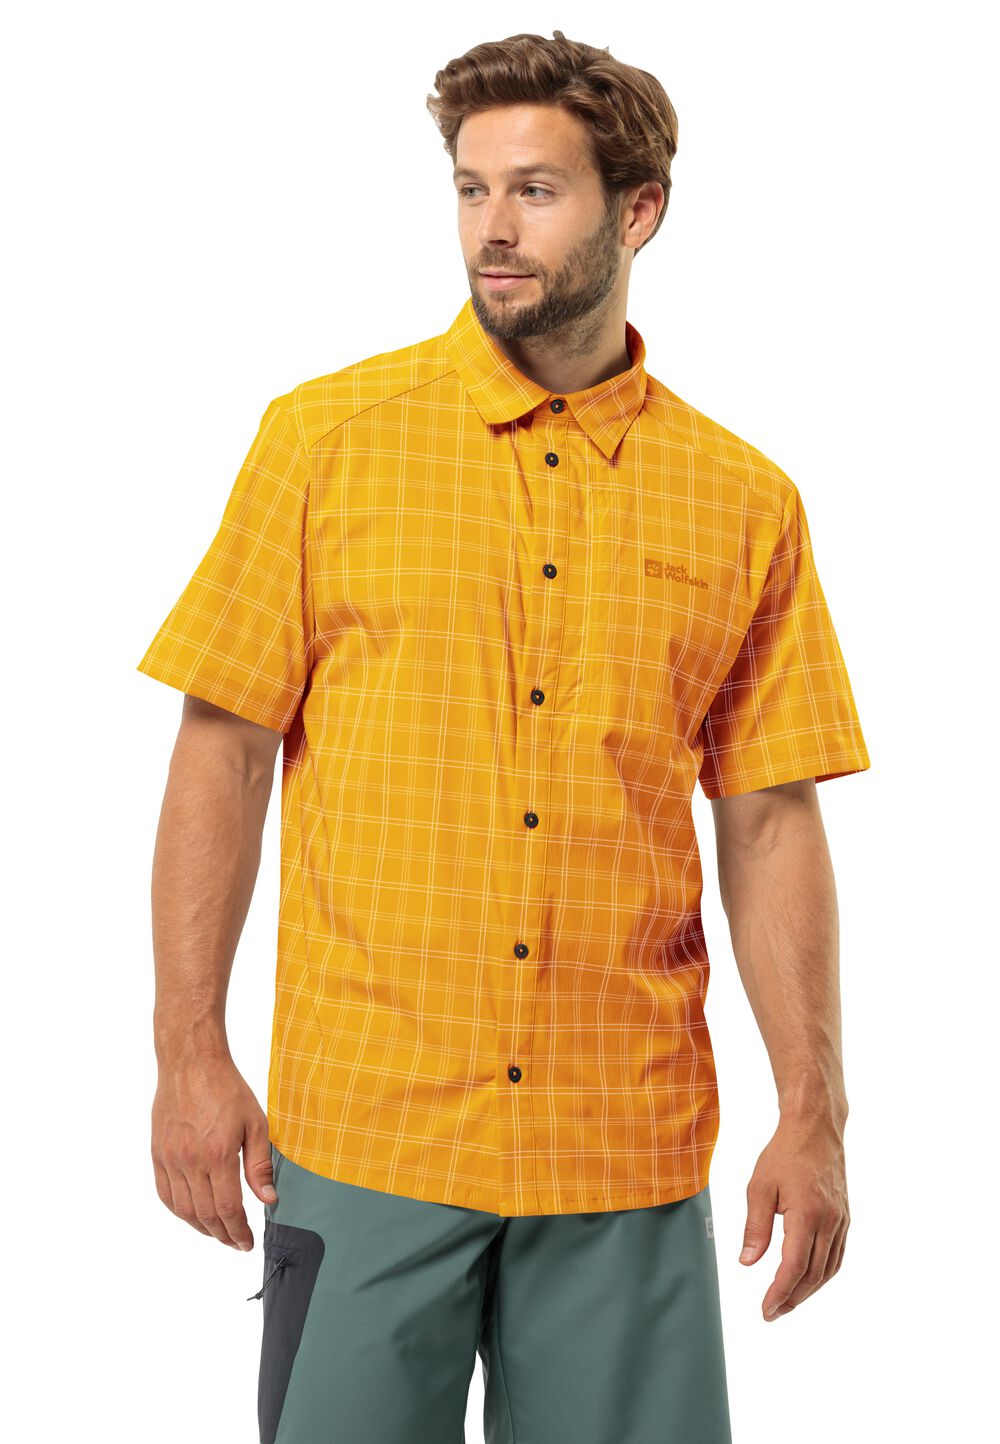 Jack Wolfskin Norbo S S Shirt Men Overhemd met korte mouwen Heren L bruin curry check